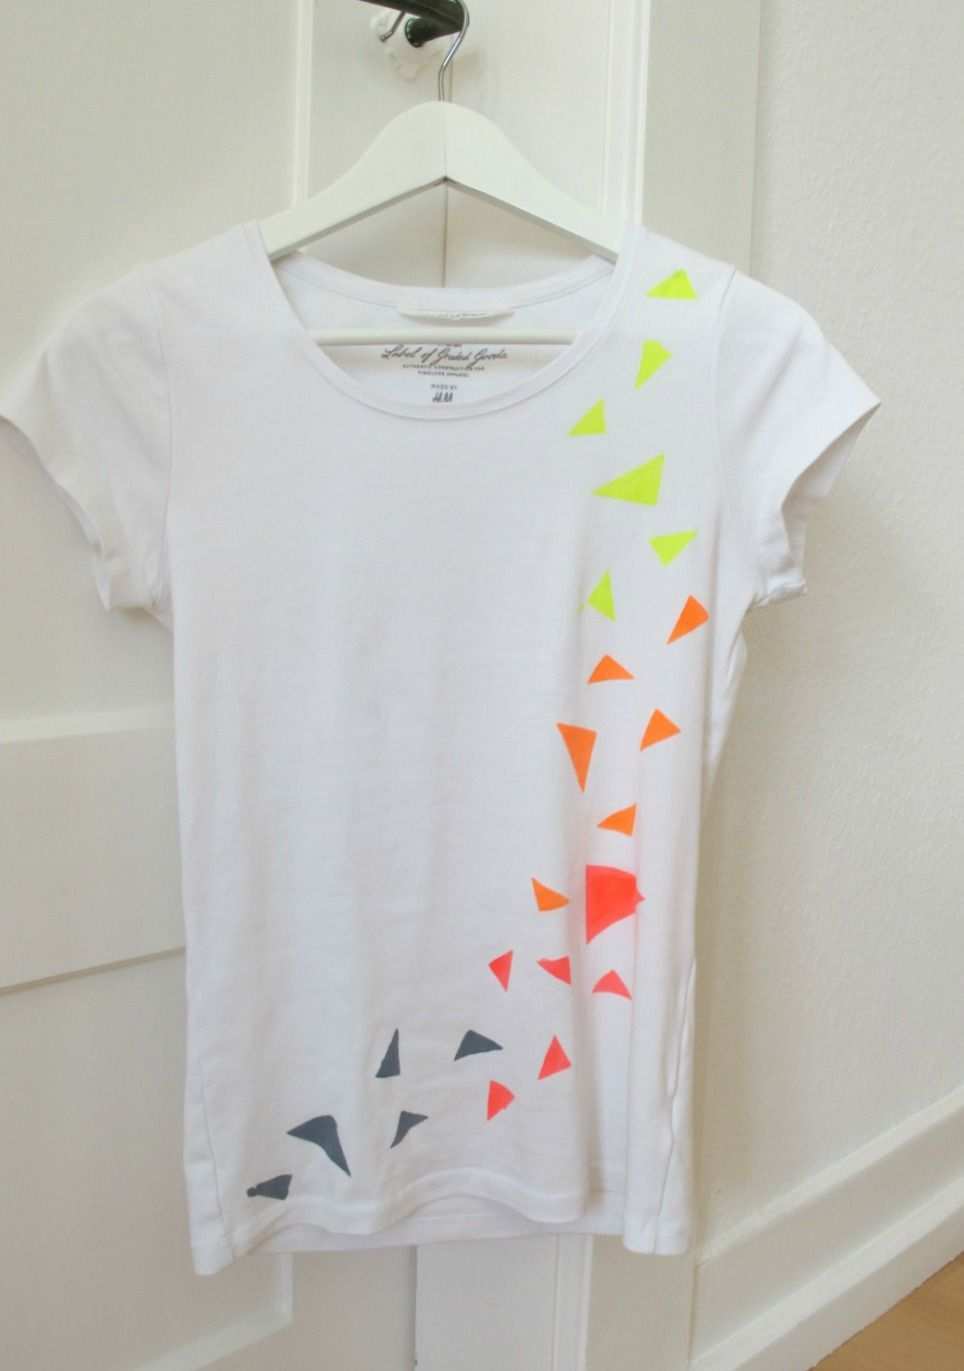 Diy Neon Shirt Babybirds Neonkleidung Selbstgemachte Kleidung T Shirt Bemalen